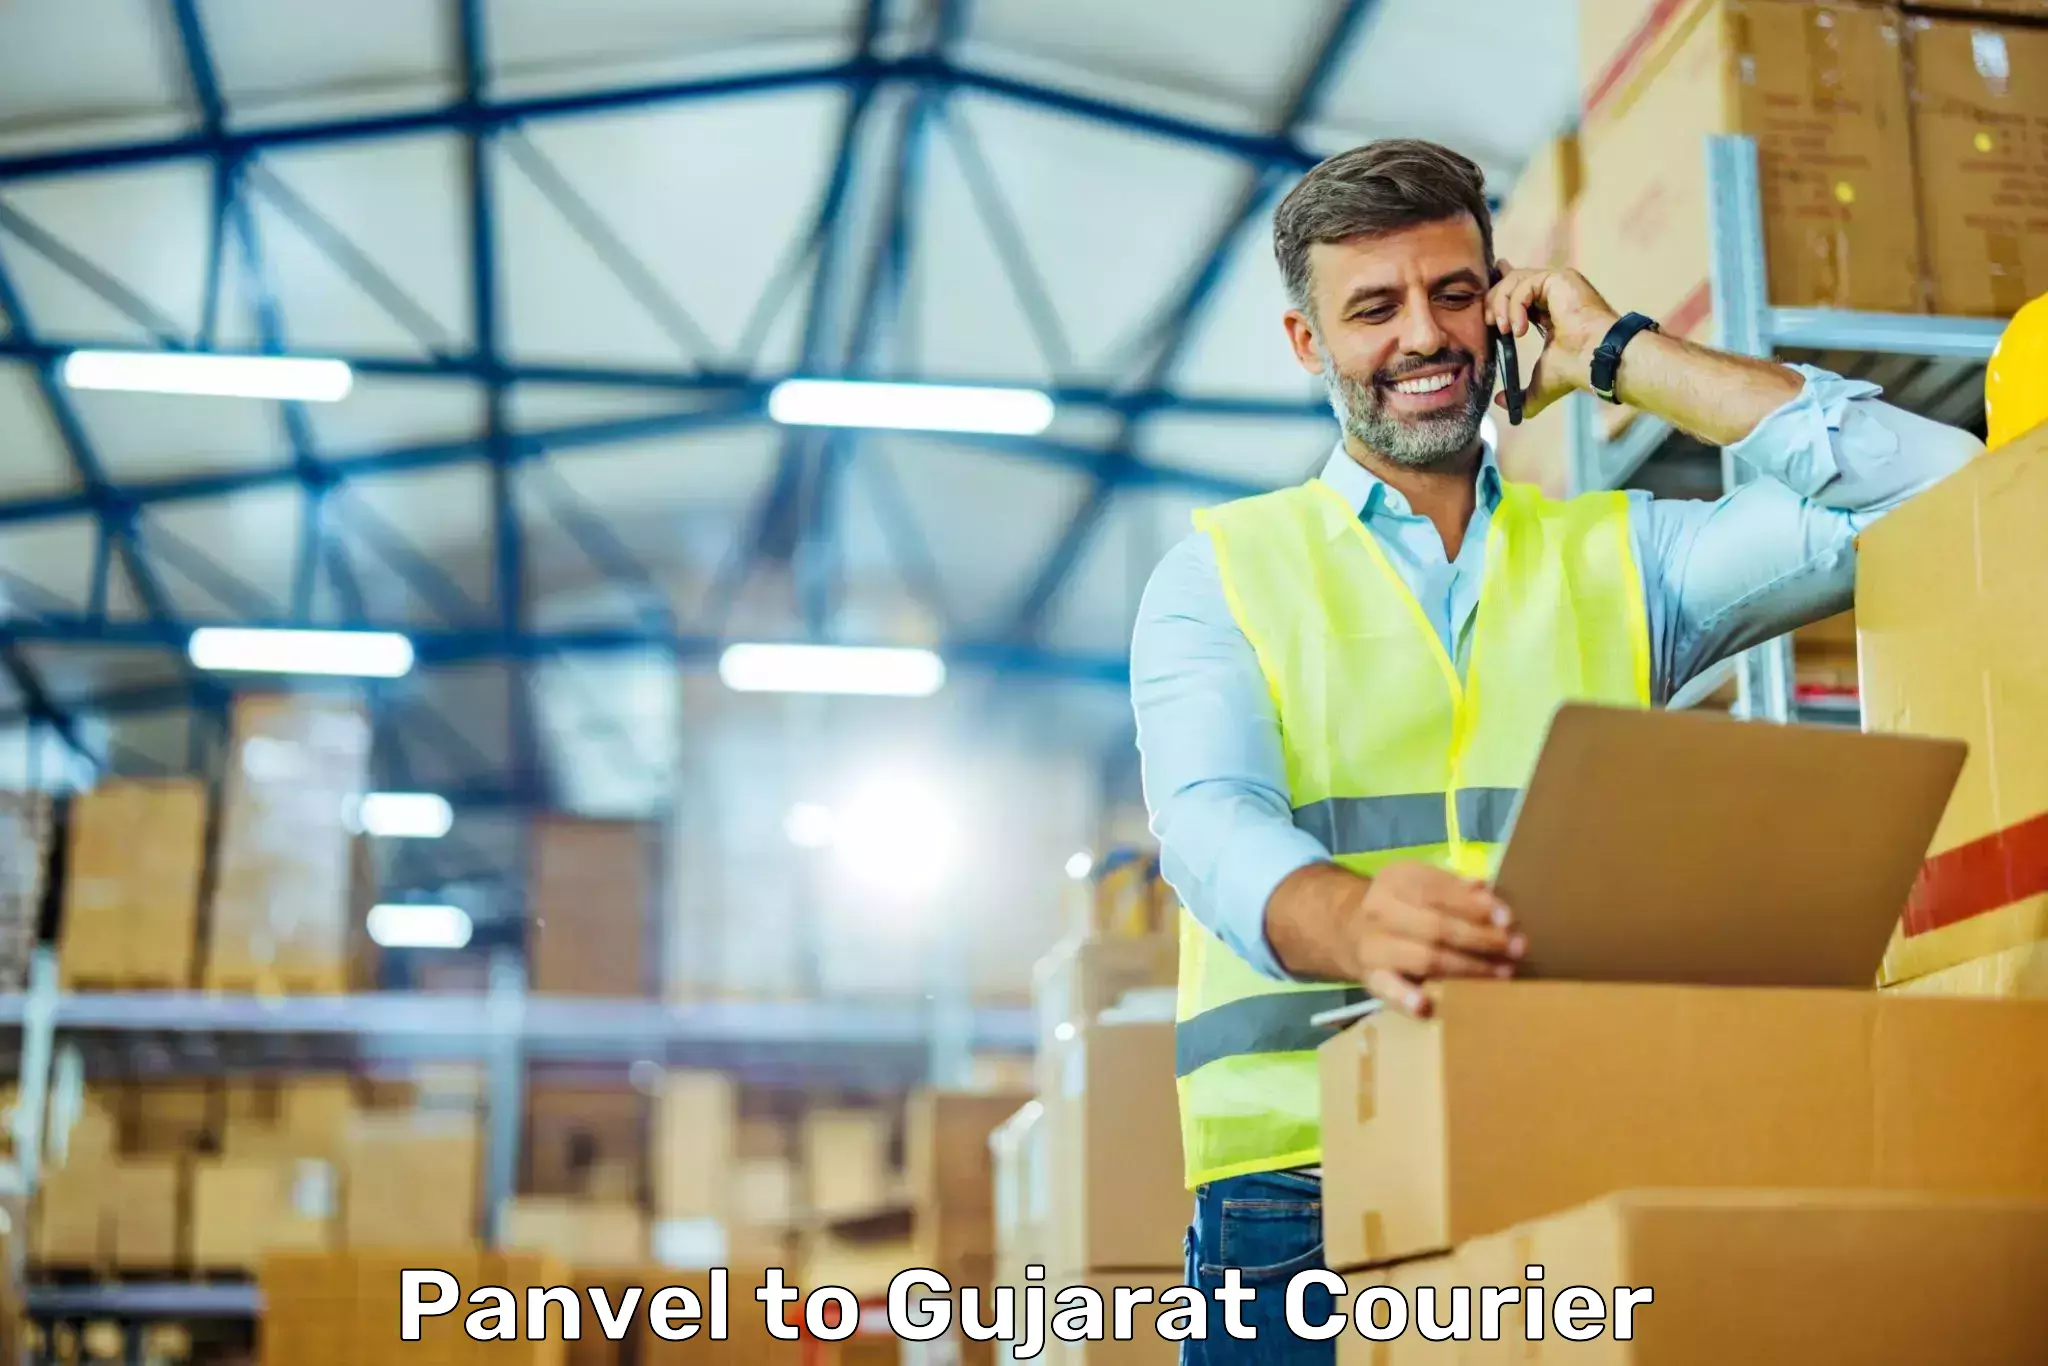 Efficient parcel service Panvel to Gujarat